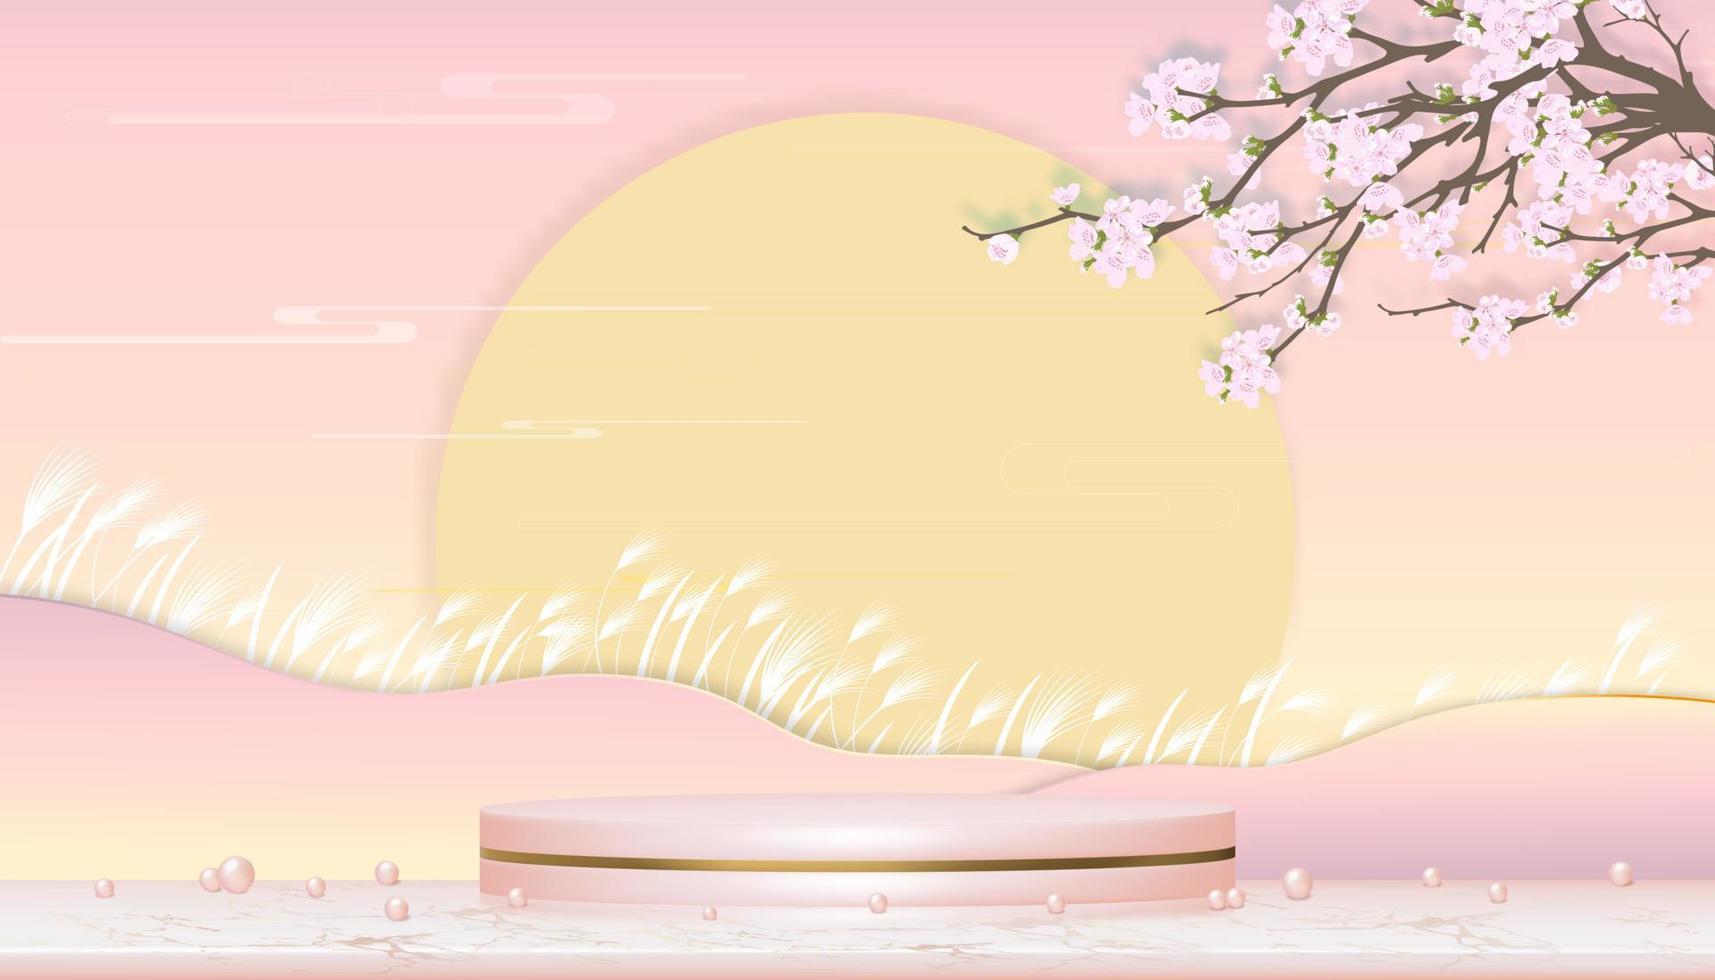 salle de studio avec podium, fleur de pommier sur fond pastel rose, bannière de toile de fond de printemps 3d vectorielle de support de cylindre en or rose sur un sol en marbre en feuille d'or rose avec branche fleurie sakura rose vecteur